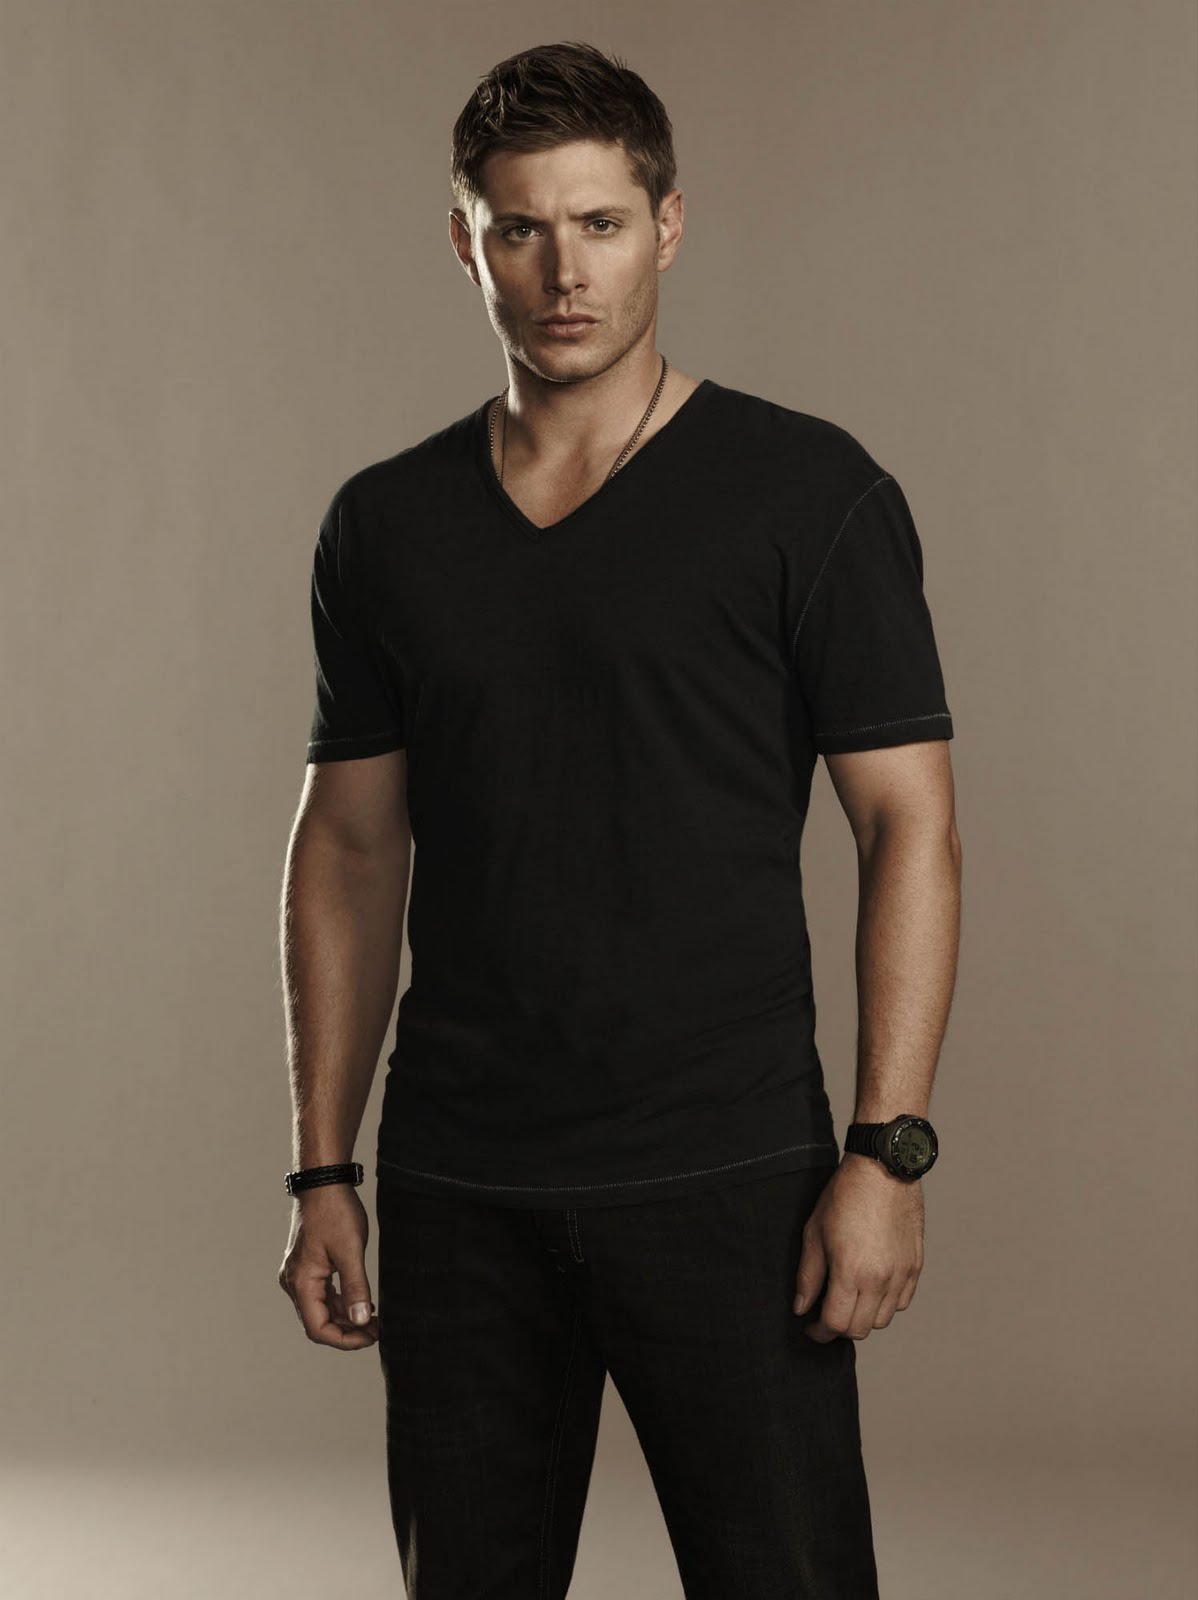 Jensen+Ackles+as+Dean+Winchester.jpg